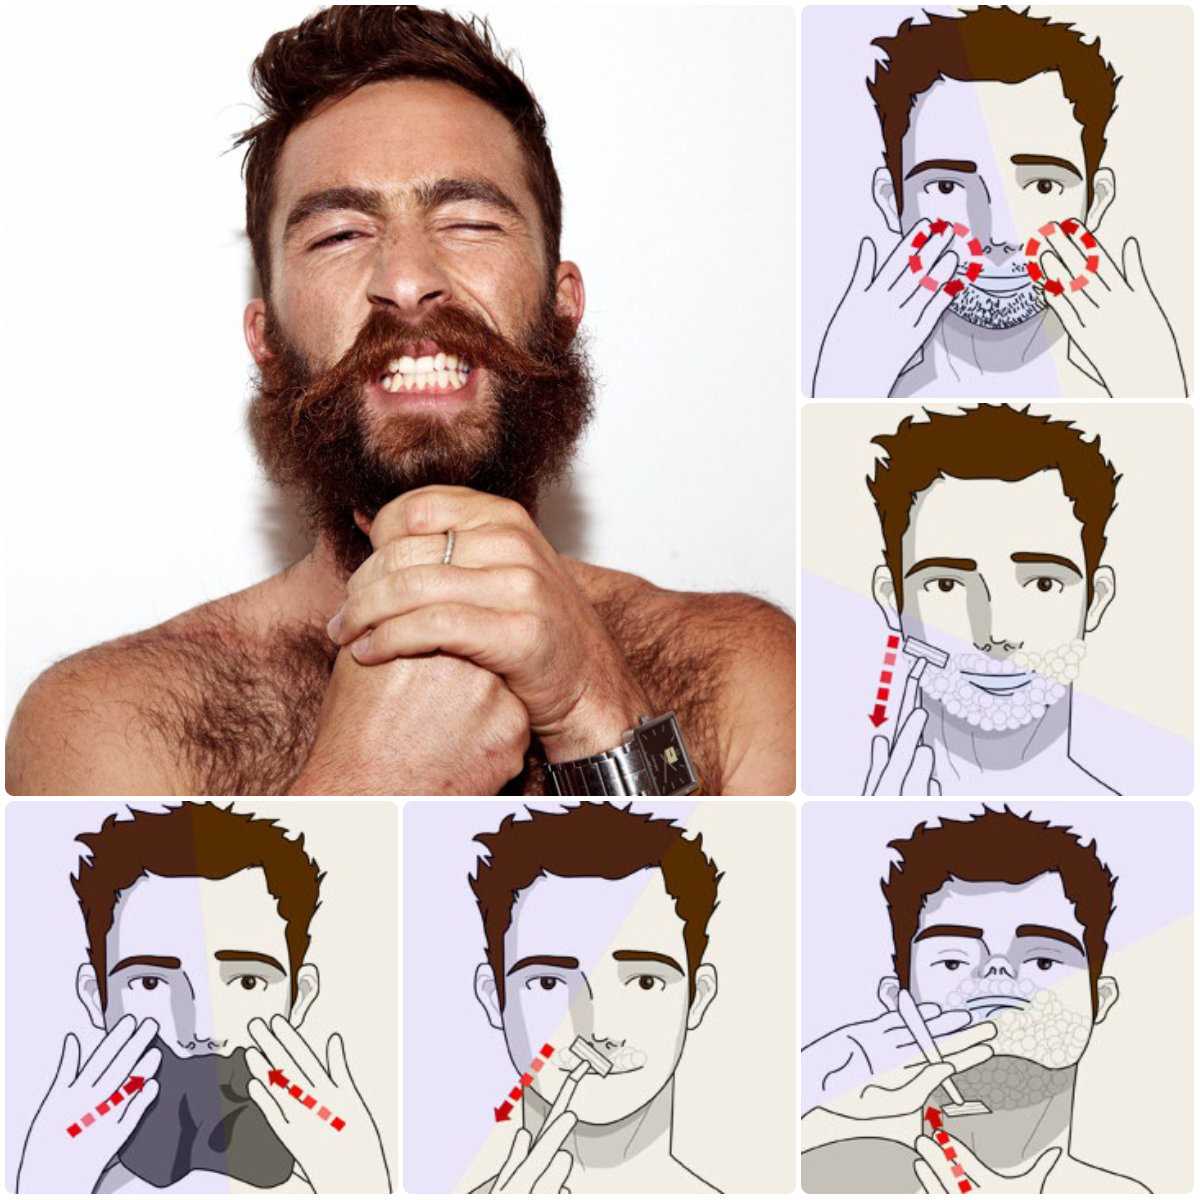 Знаете ли вы как правильно брить бороду?